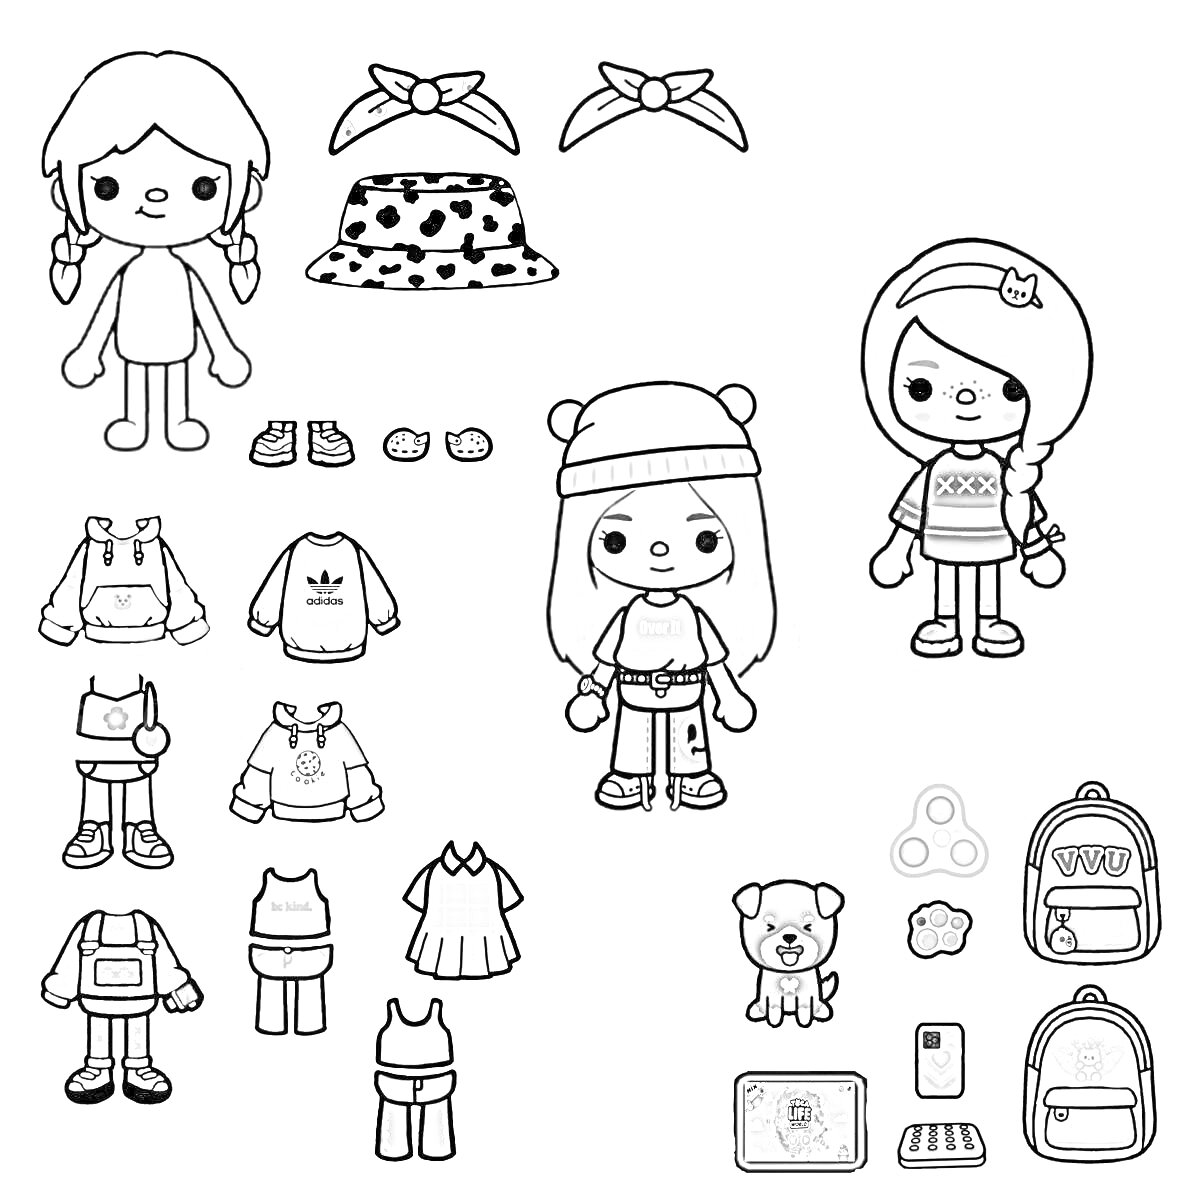 Раскраска Куклы Тока Бока с набором одежды и аксессуаров, включая свитера, брюки, юбки, шорты, шапки, повязки на голову, обувь, рюкзаки, мобильное устройство, игрушку-медвежонка и поп-ит.